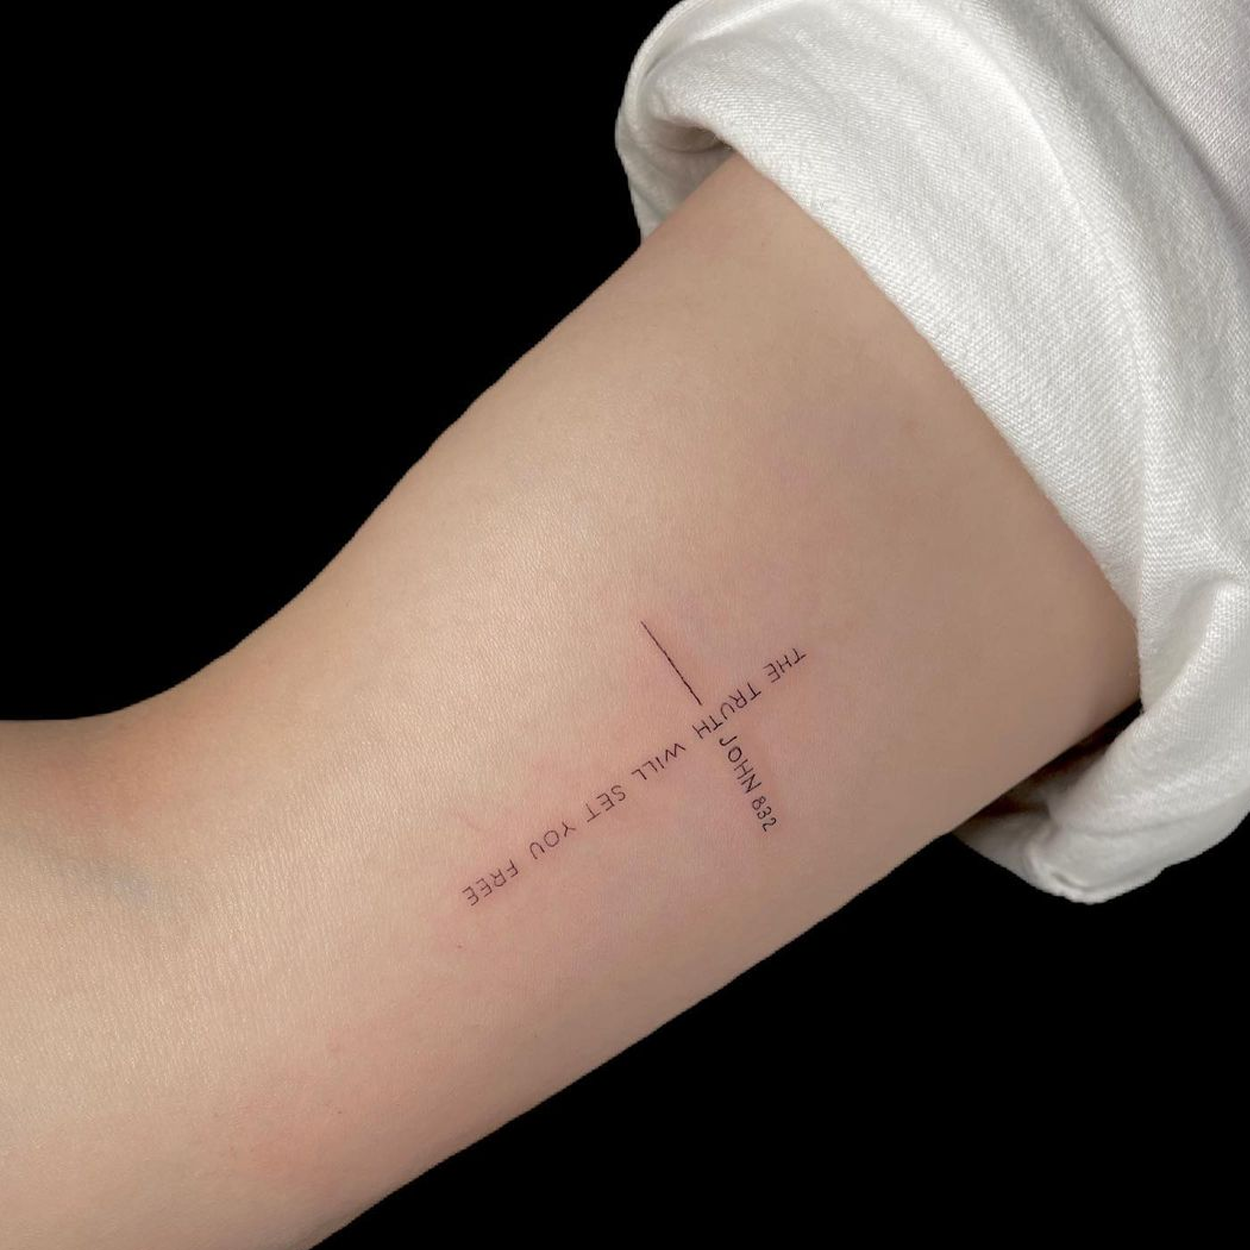 tatuagem de cruz no braço